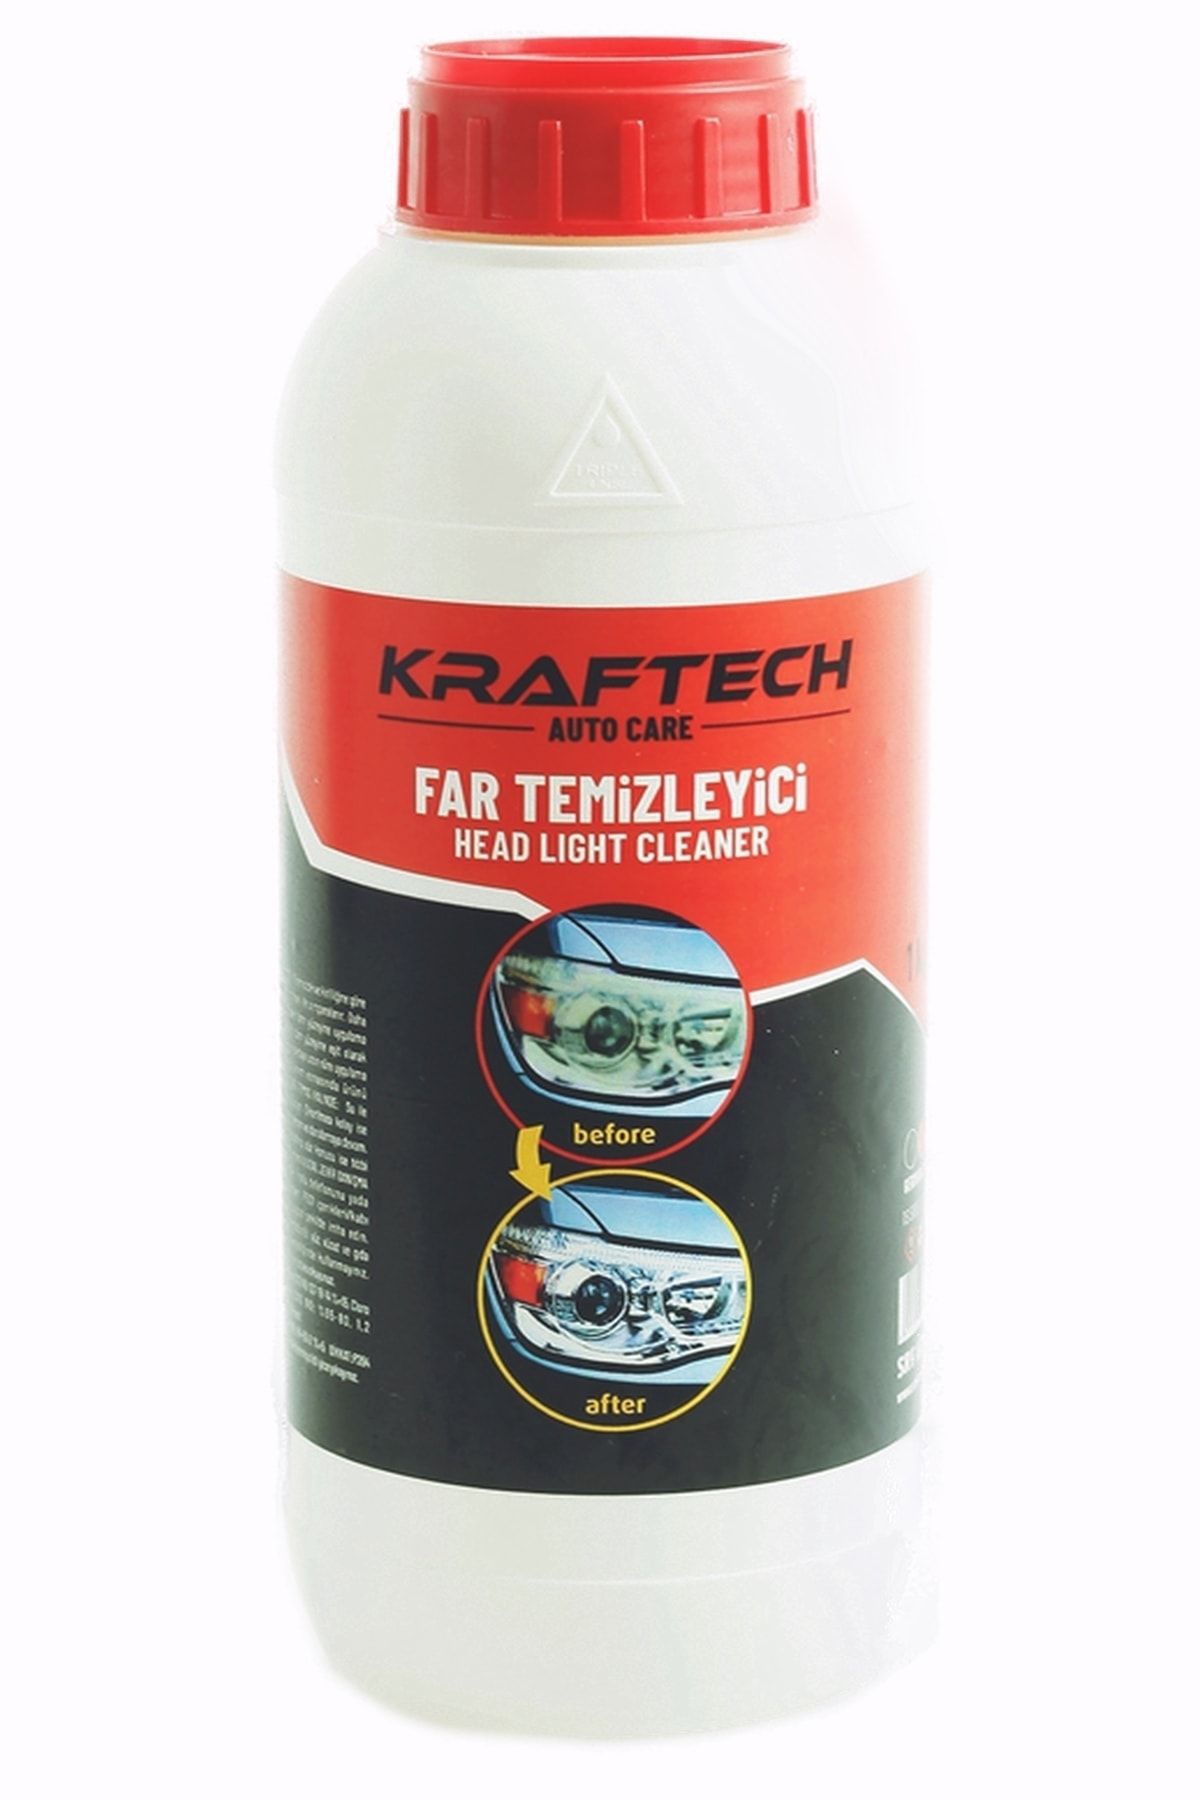 Kraftech Yeni Nesil Araba Far Temizleme Sıvısı Far Temizleme Solüsyonu Kloroform Uyumlu 1 Kg